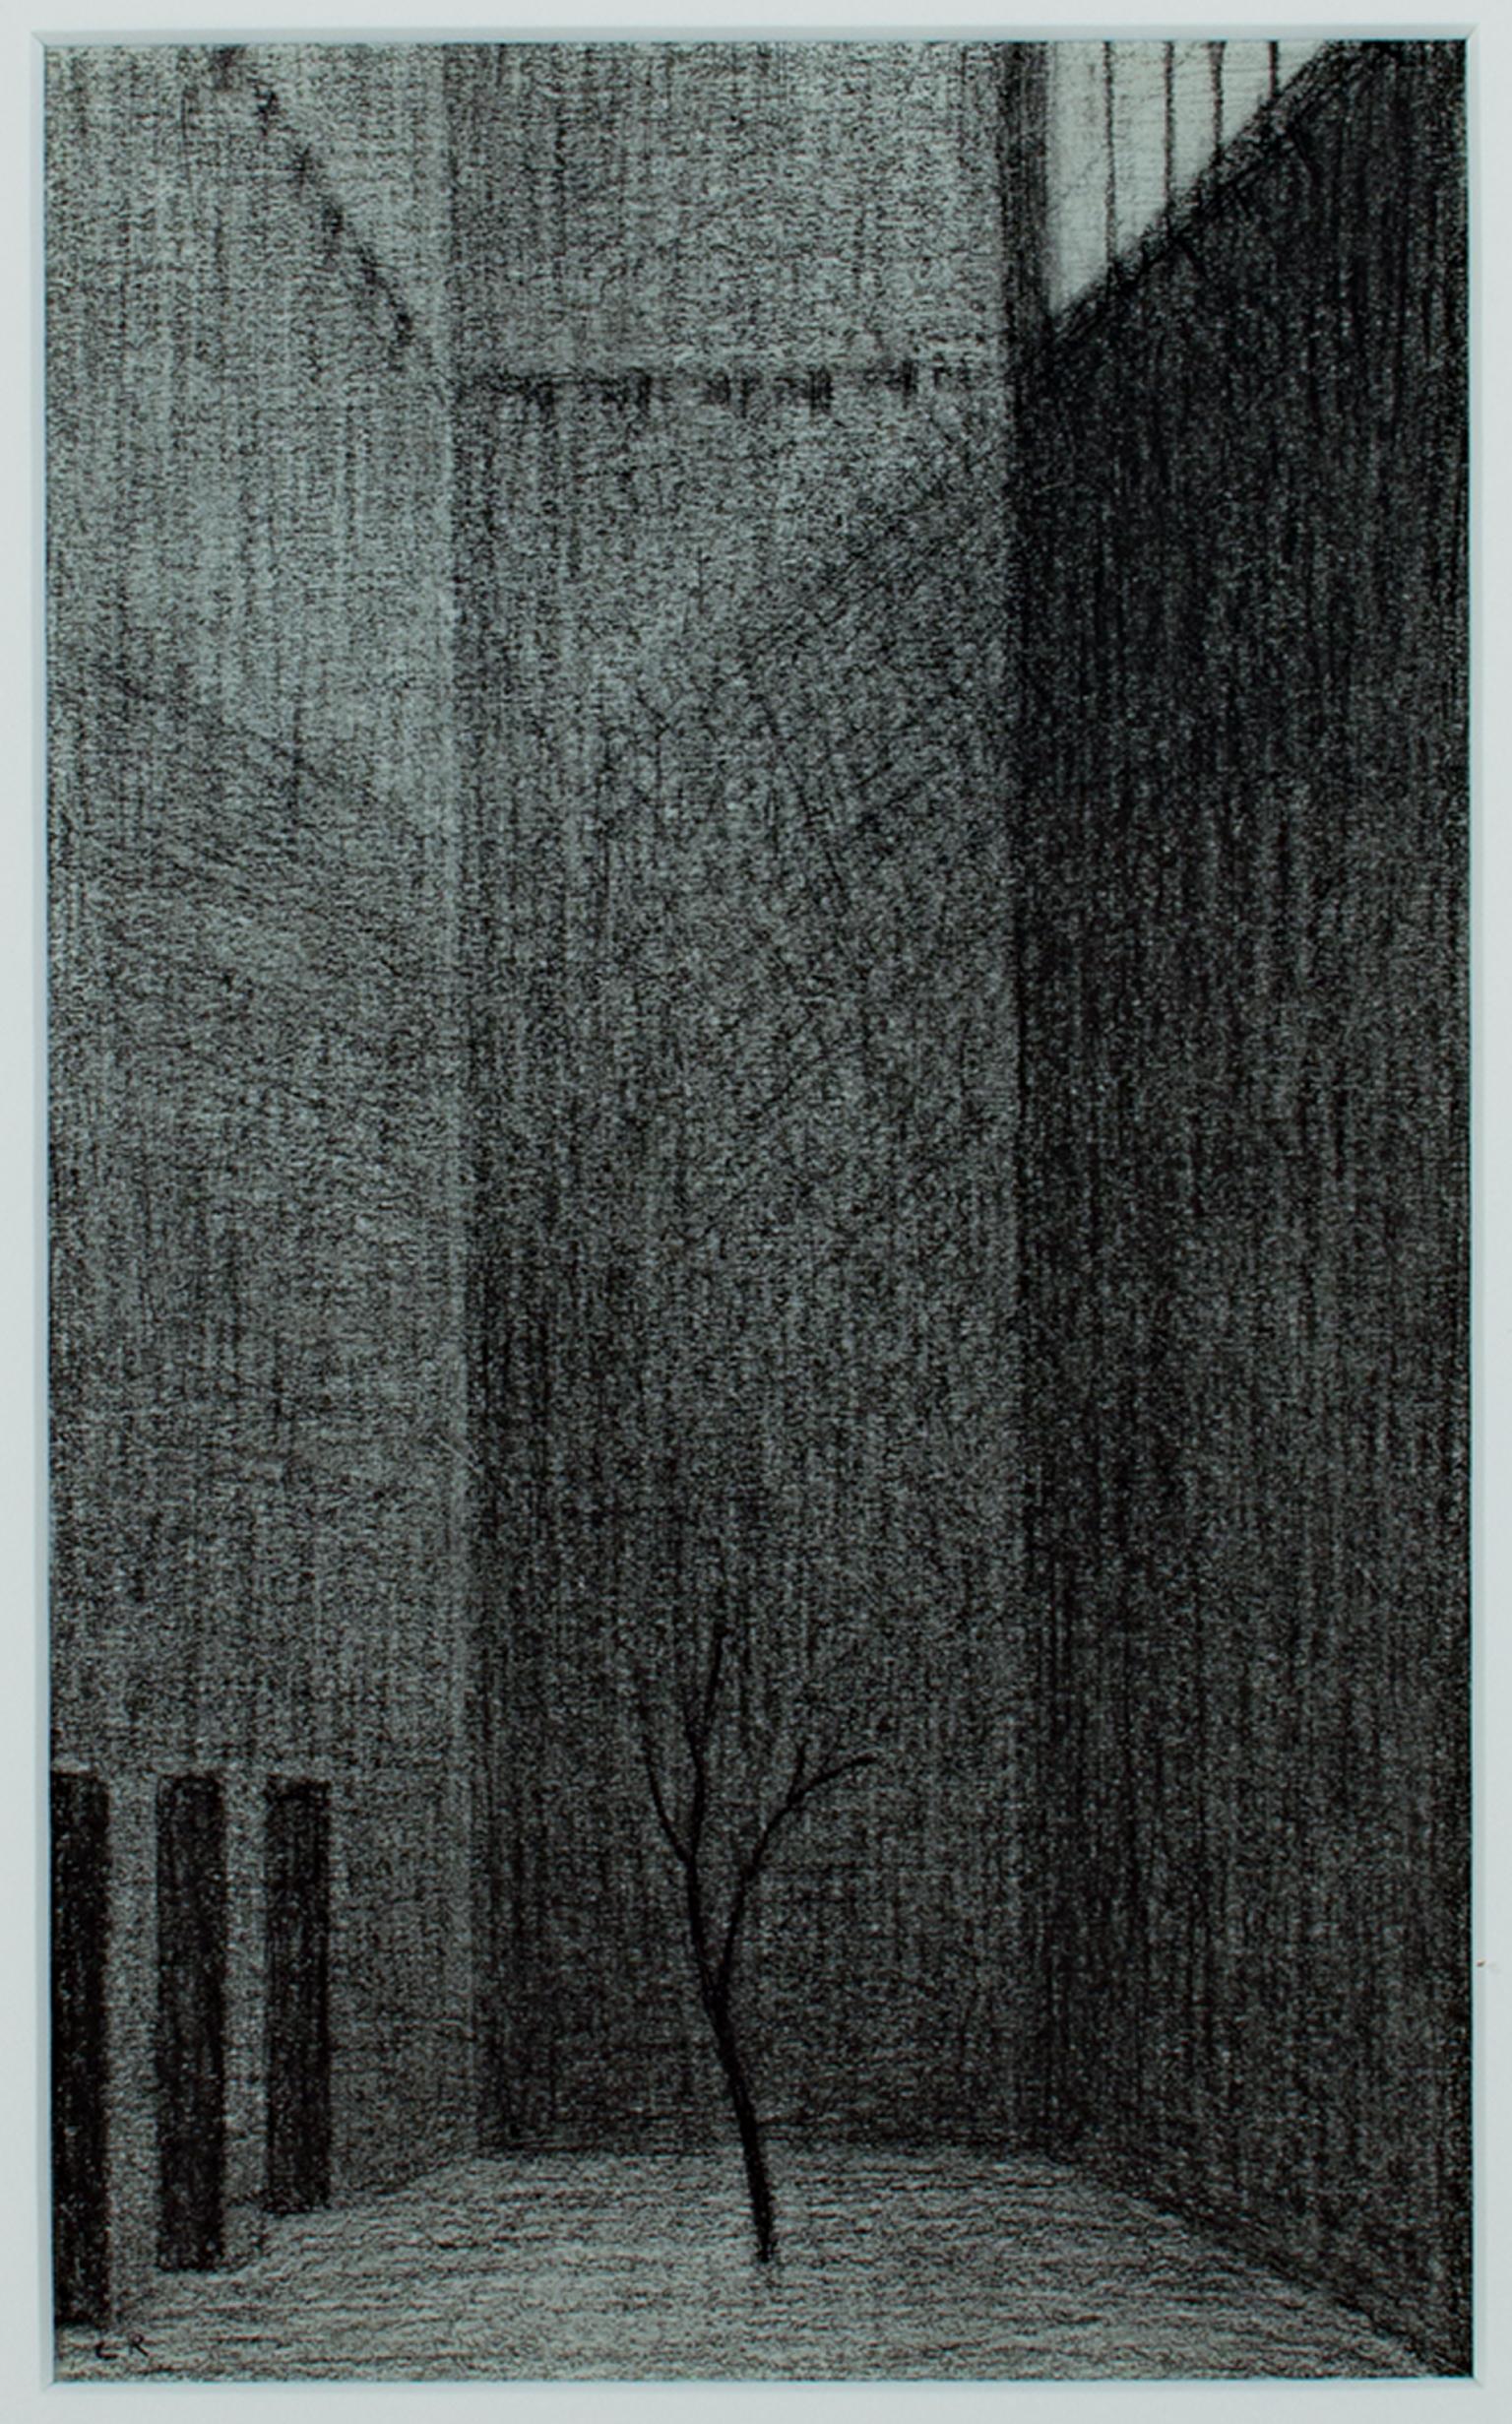 "Tree in Court" ist eine gerahmte, schwarze Conte-Zeichnung von Laurence Rathsack, die mit seinen Initialen signiert ist. Ein einsamer Baum steht in der Mitte eines von hohen Mauern umgebenen Hofes. Von den Fenstern hoch oben fällt ein wenig Licht